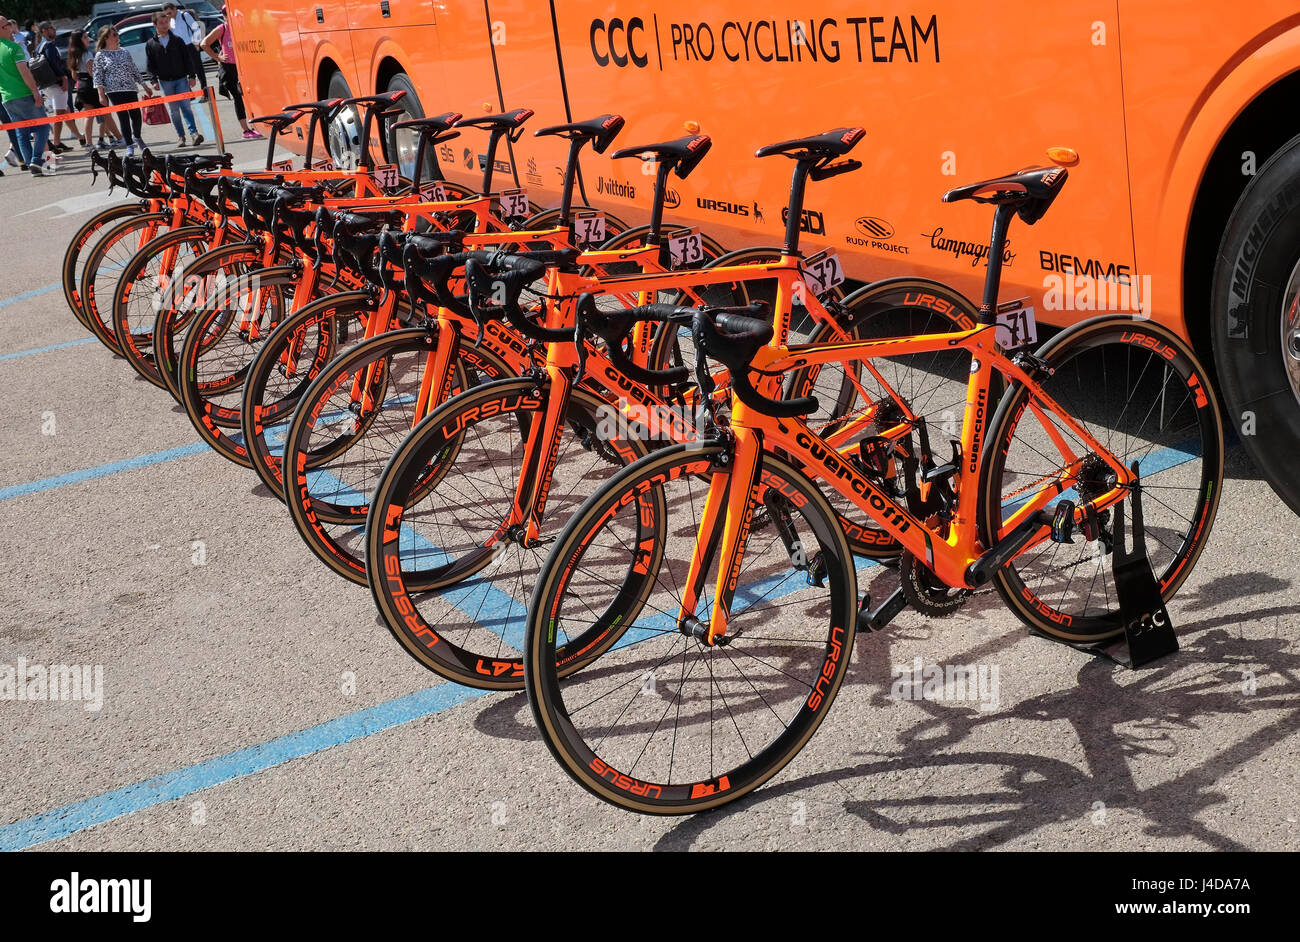 Cycles guerciotti sprandi de la CCC de l'équipe de course à vélo, tour  d'Italie, Alghero, Sardaigne, Italie Photo Stock - Alamy